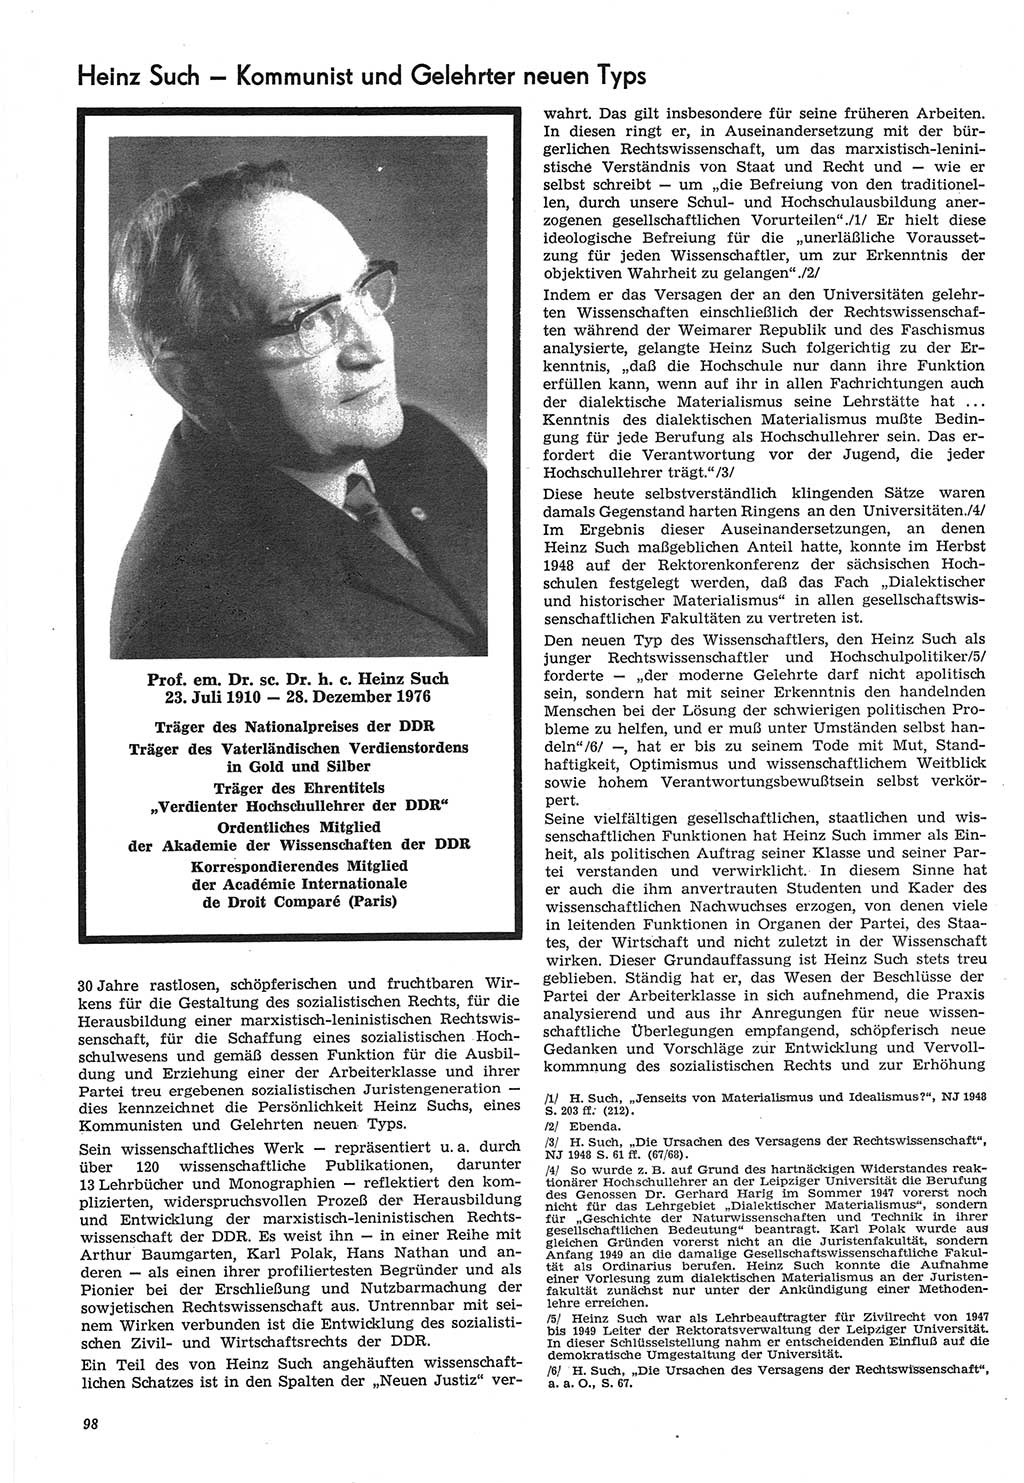 Neue Justiz (NJ), Zeitschrift für Recht und Rechtswissenschaft-Zeitschrift, sozialistisches Recht und Gesetzlichkeit, 31. Jahrgang 1977, Seite 98 (NJ DDR 1977, S. 98)